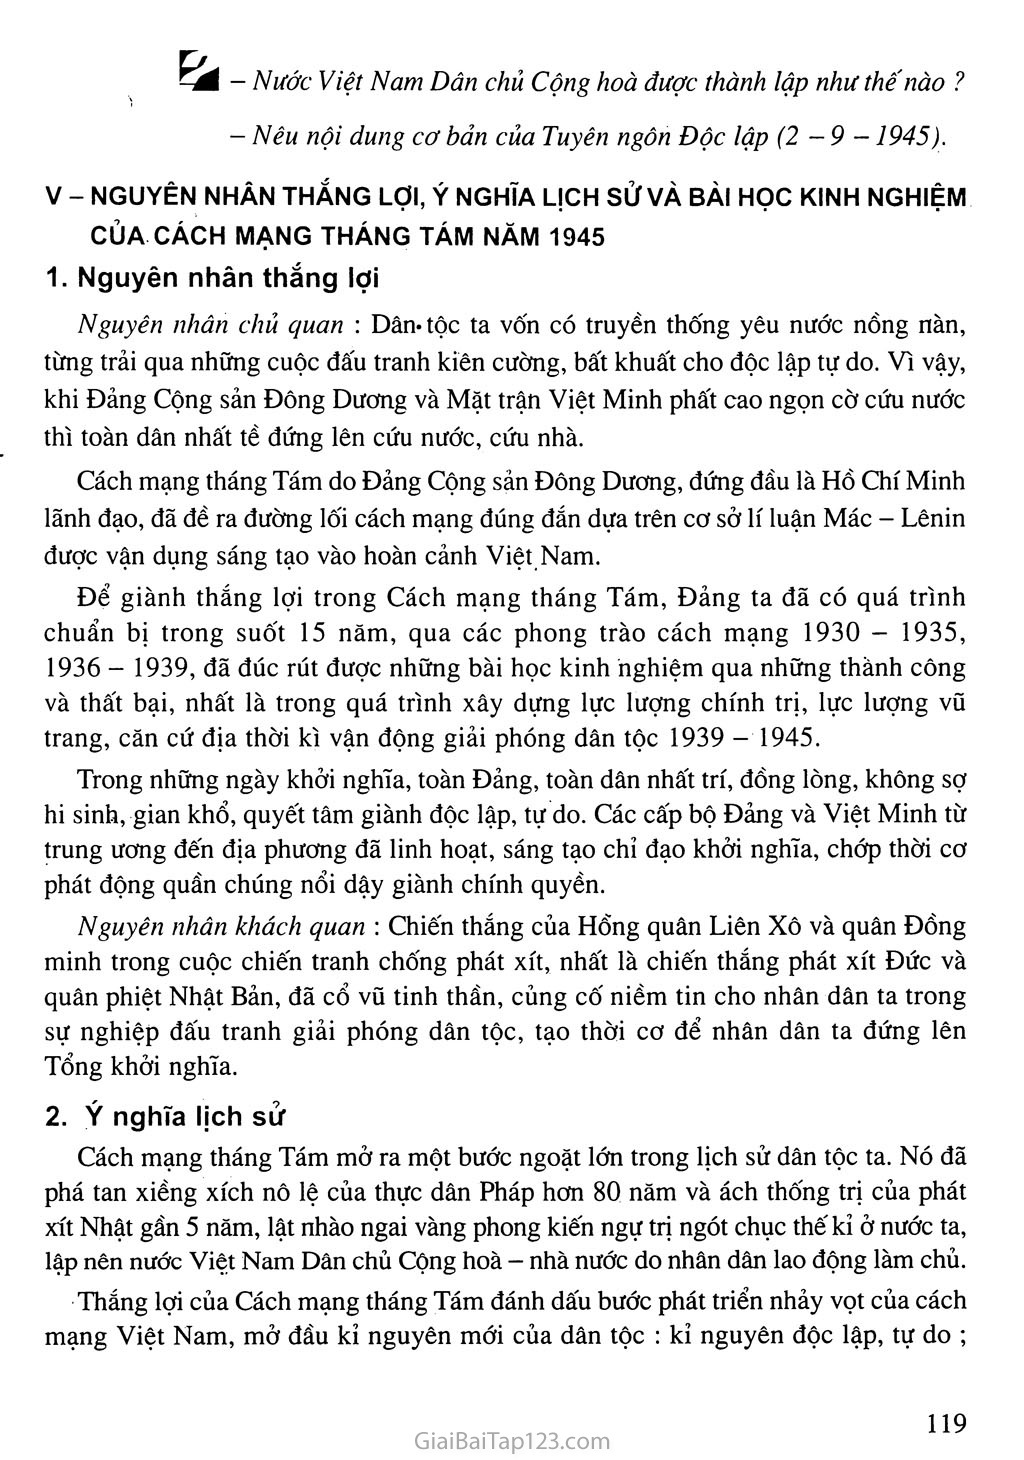 Bài 16. Phong trào giải phóng dân tộc và Tổng khởi nghĩa tháng Tám (1939 - 1945). Nước Việt Nam Dân chủ Cộng hoà ra đời trang 18